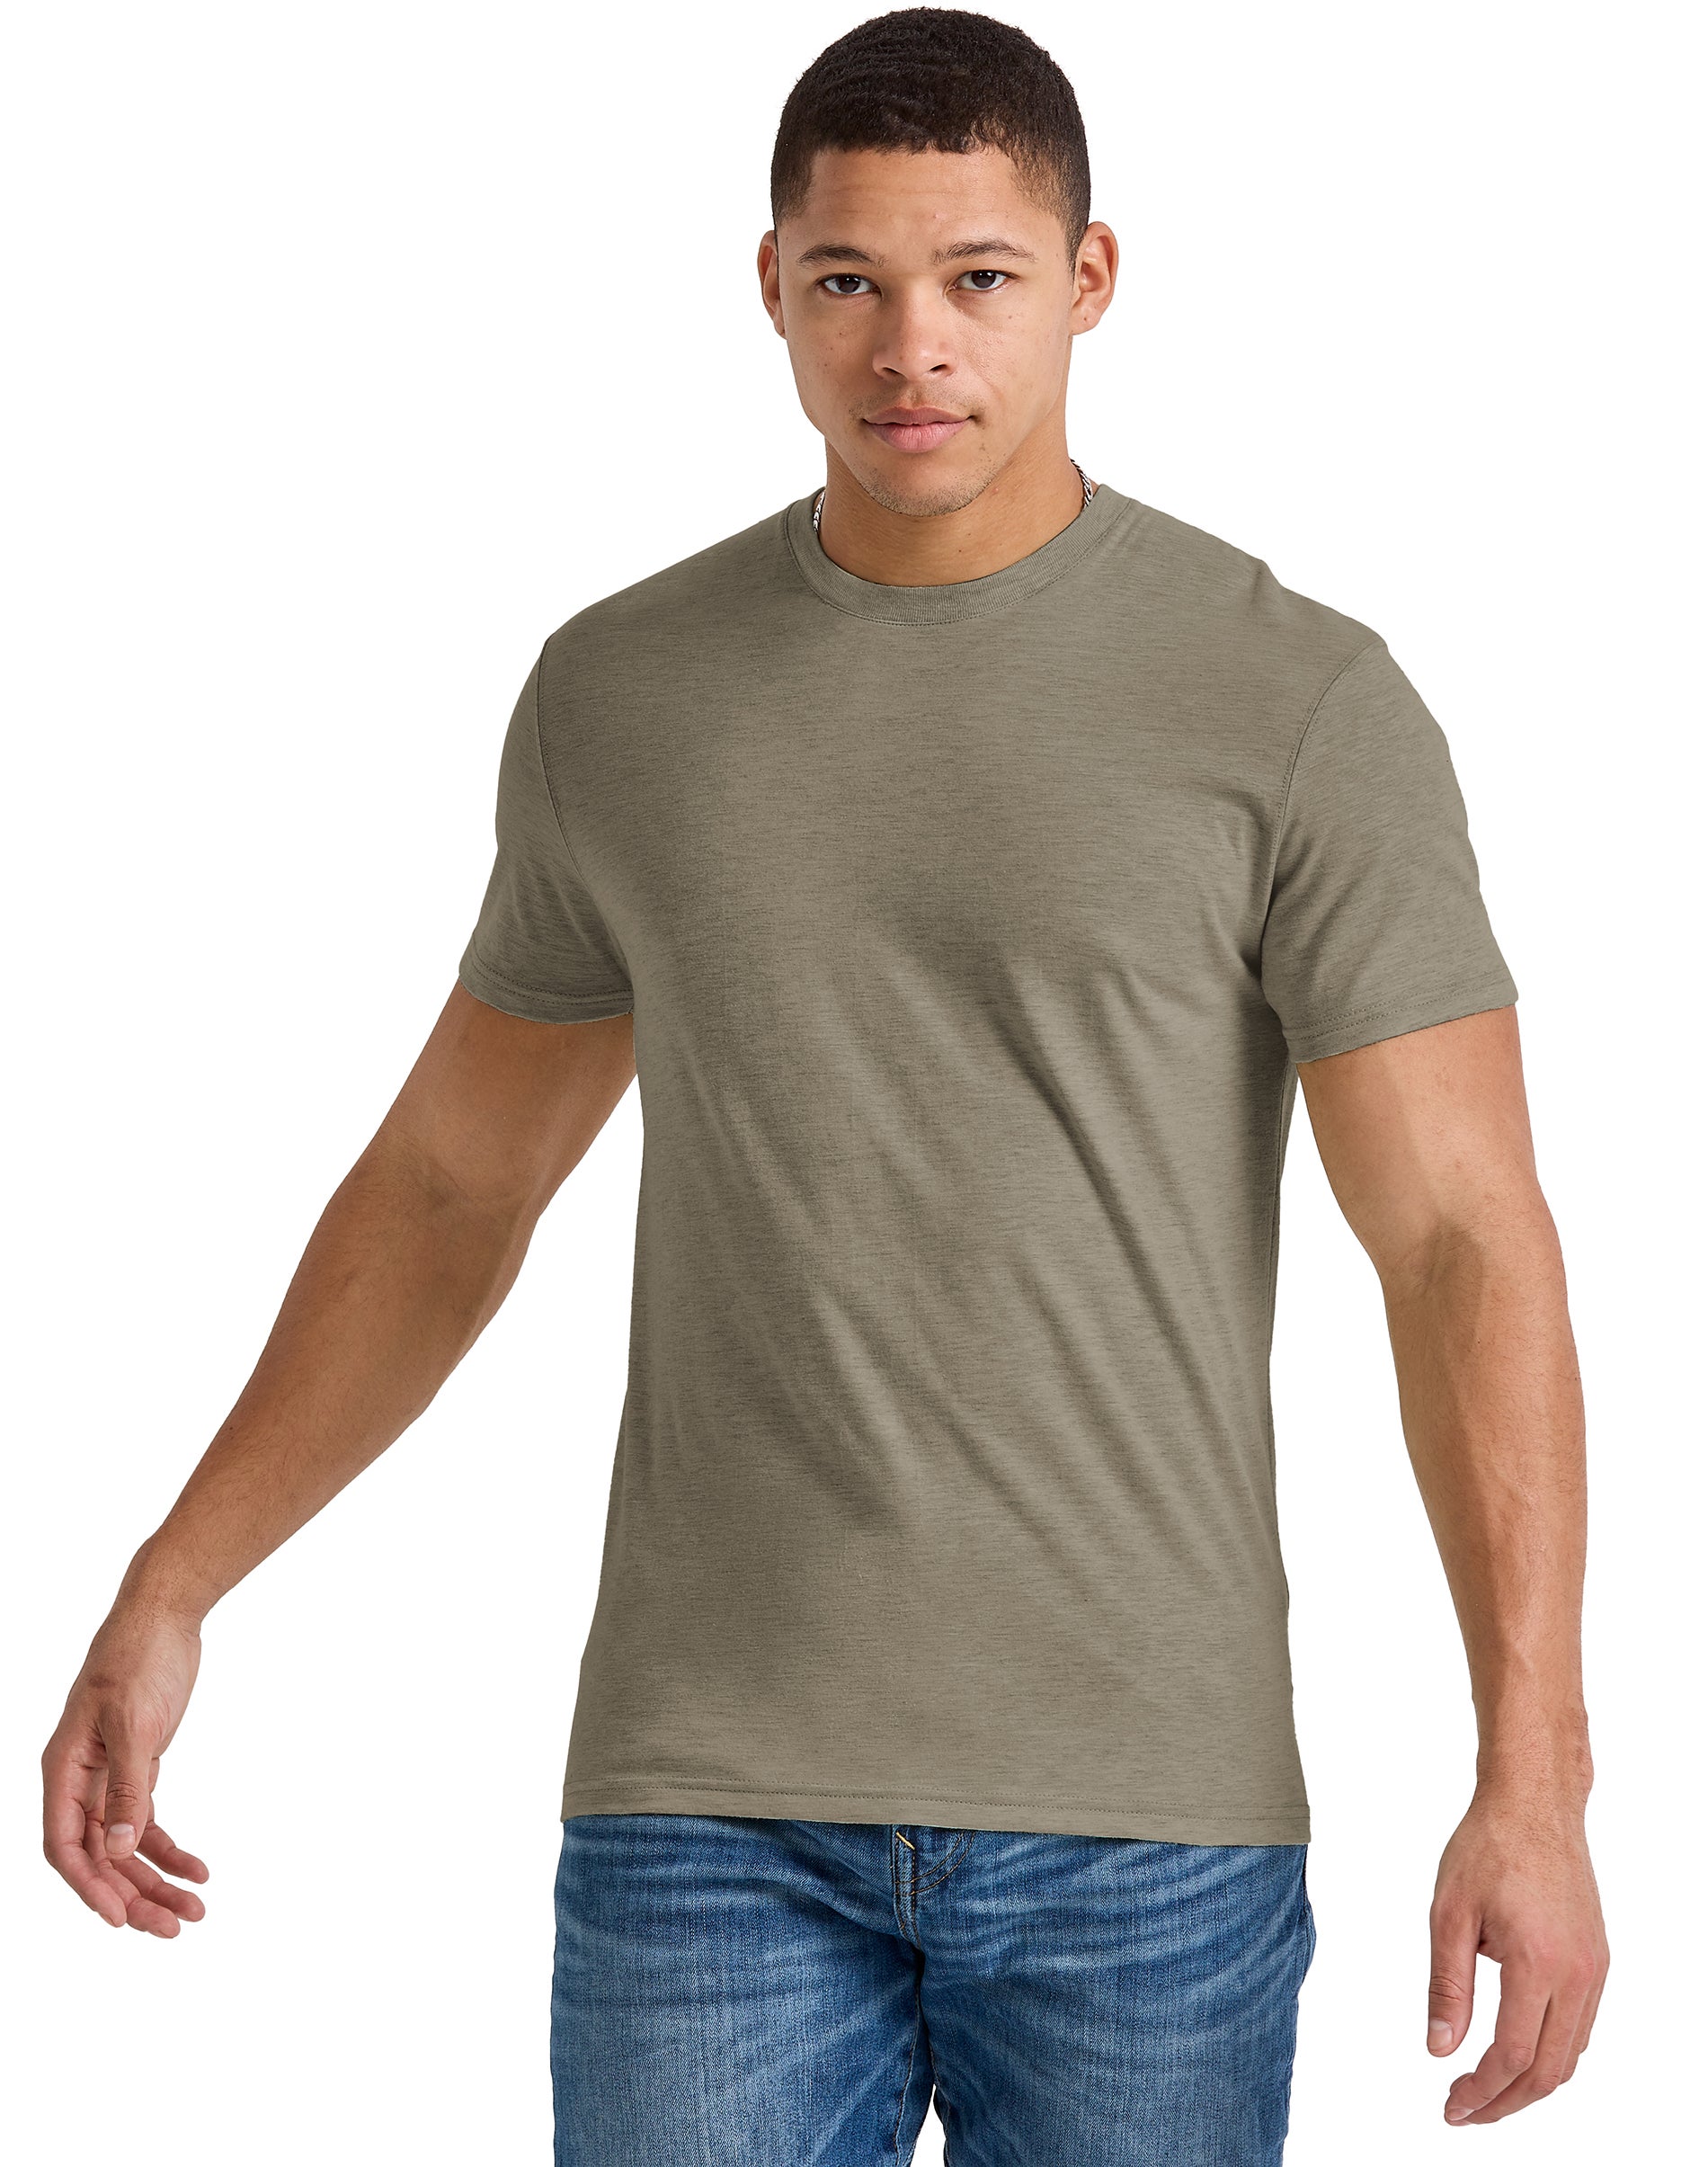 Hanes Originals Mens Cotton T-Shirt